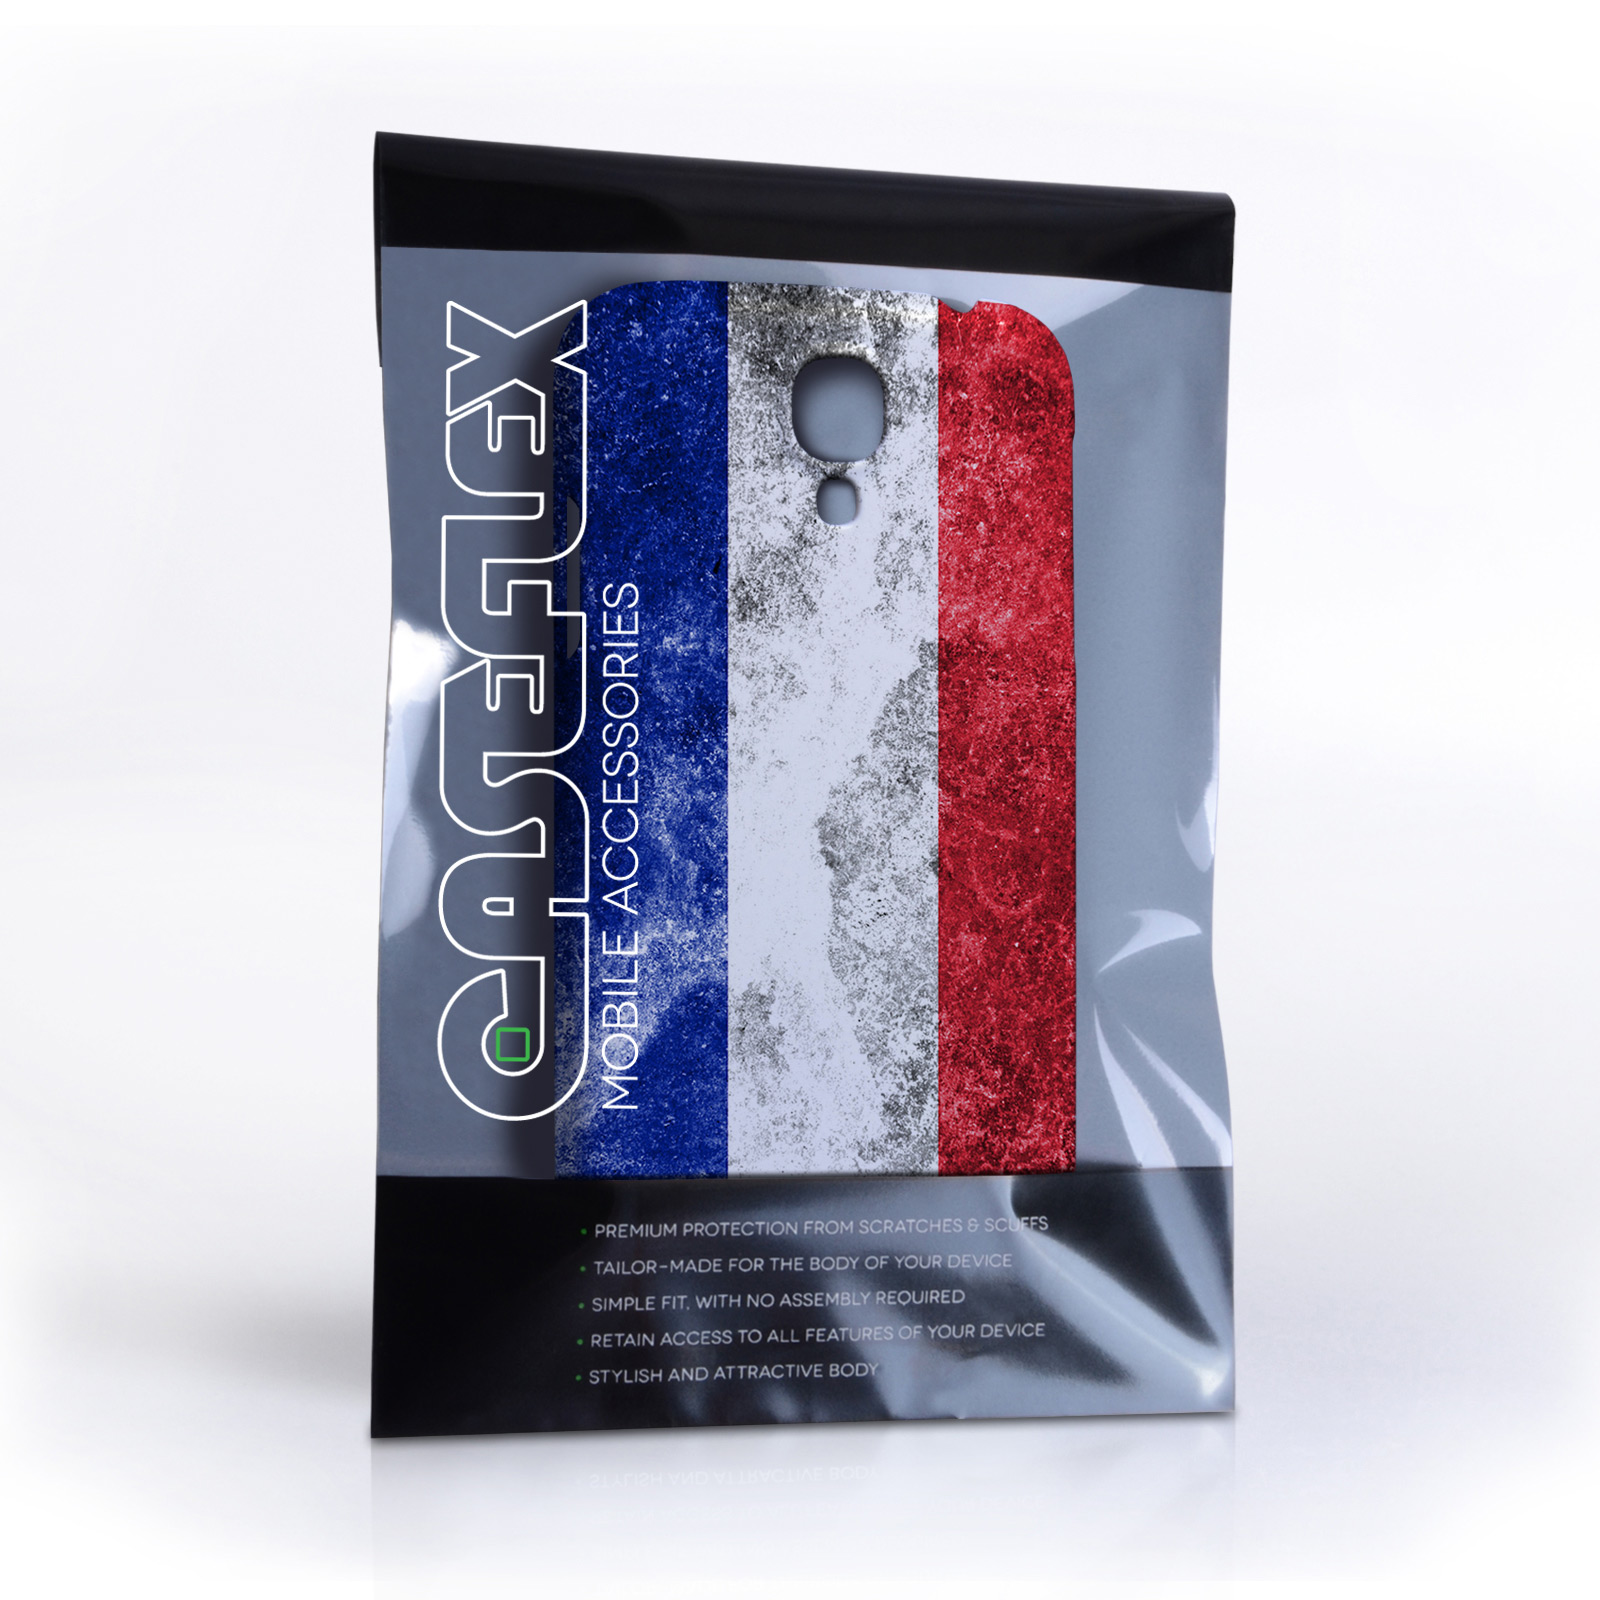 Caseflex Samsung Galaxy S4 Retro France Flag Case